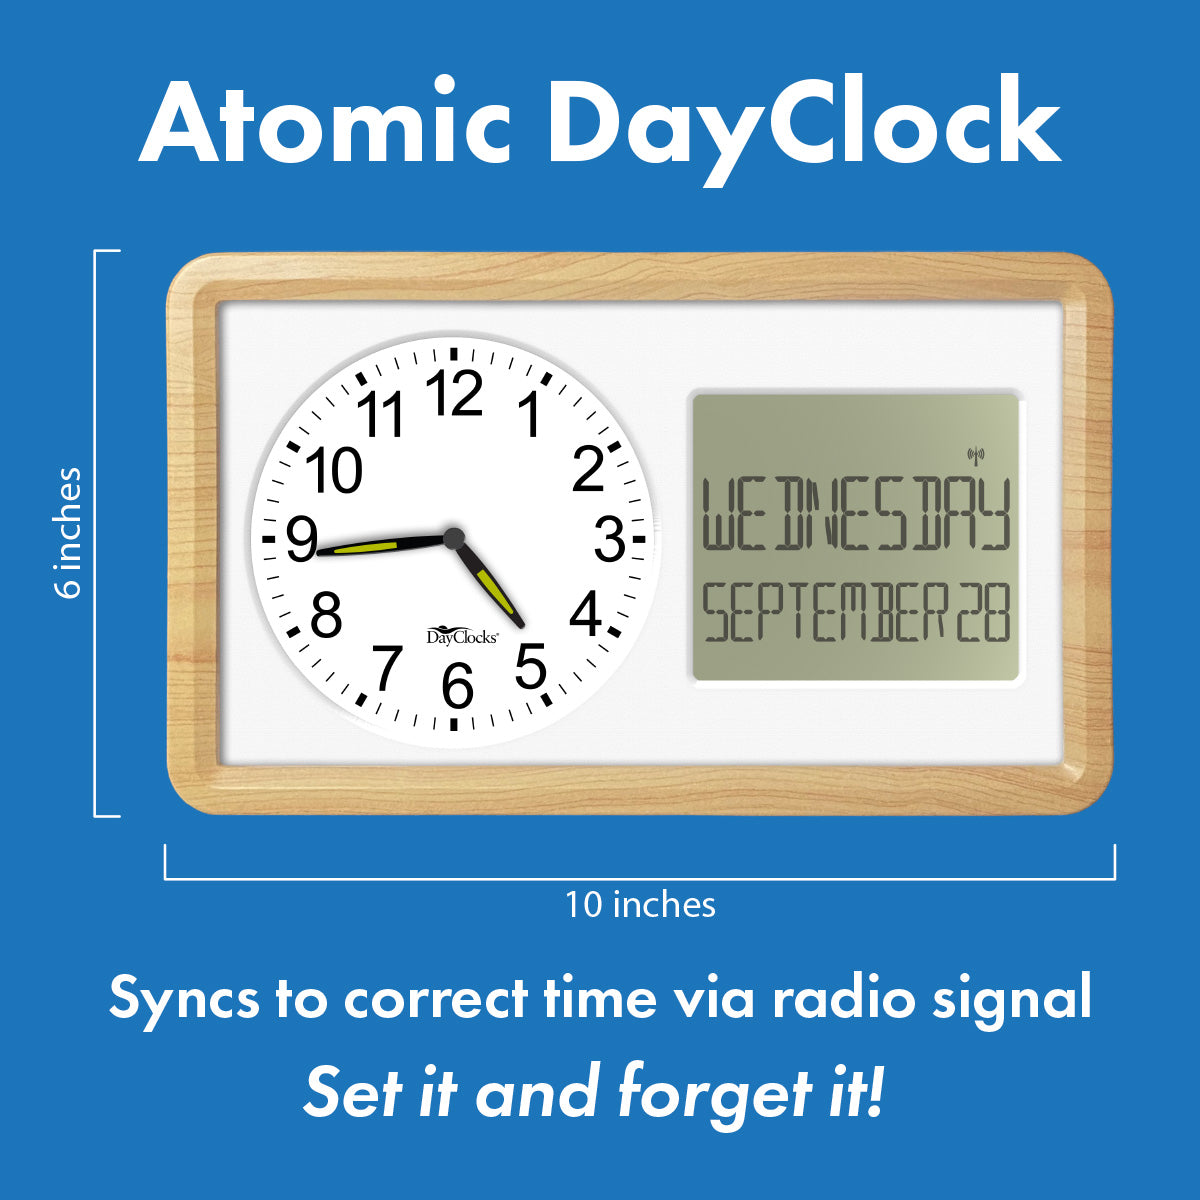 Atomic DayClock 10